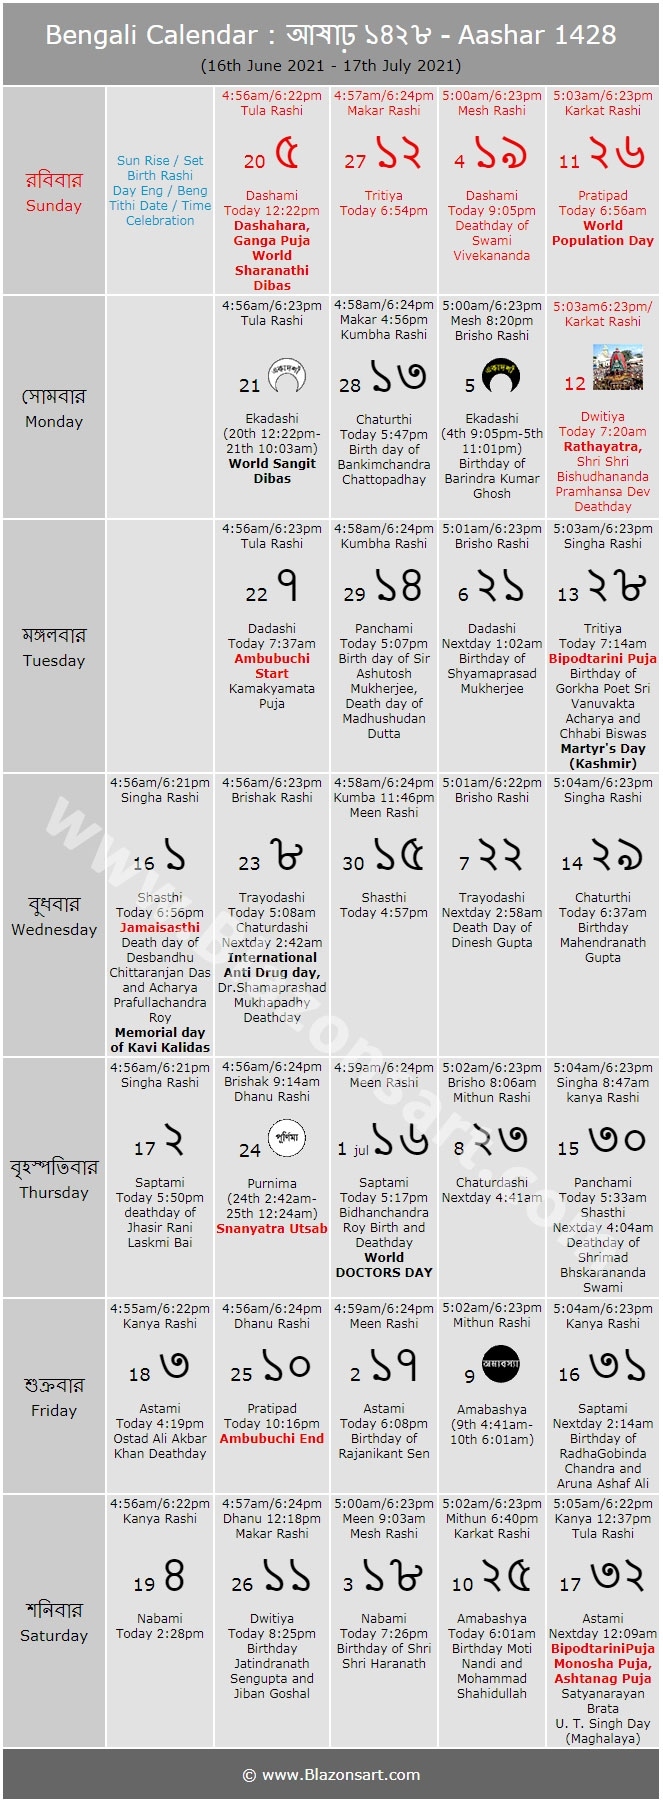 Bengali Calendar 2021 November - Calnda Bengali Calendar October 2021